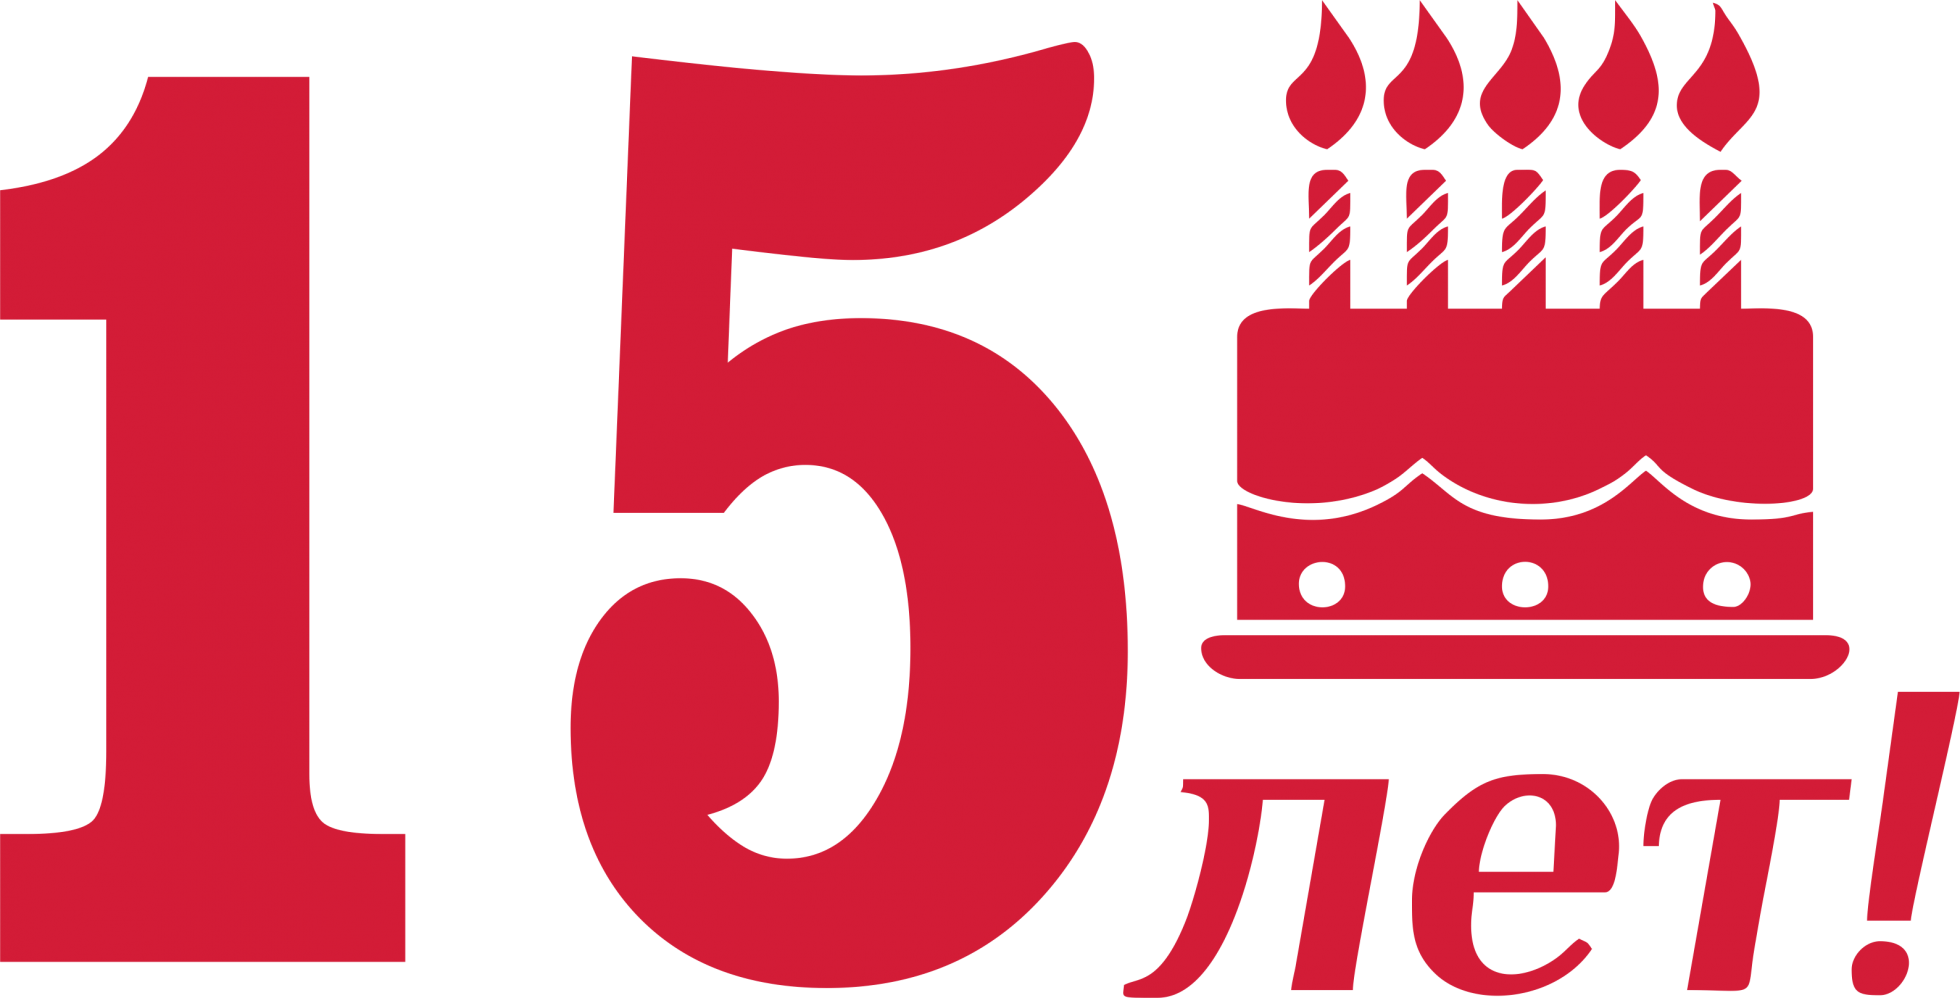 15 Лет компании. Юбилей компании 15 лет. День рождения организации 15 лет. Открытка с юбилеем компании 15 лет.